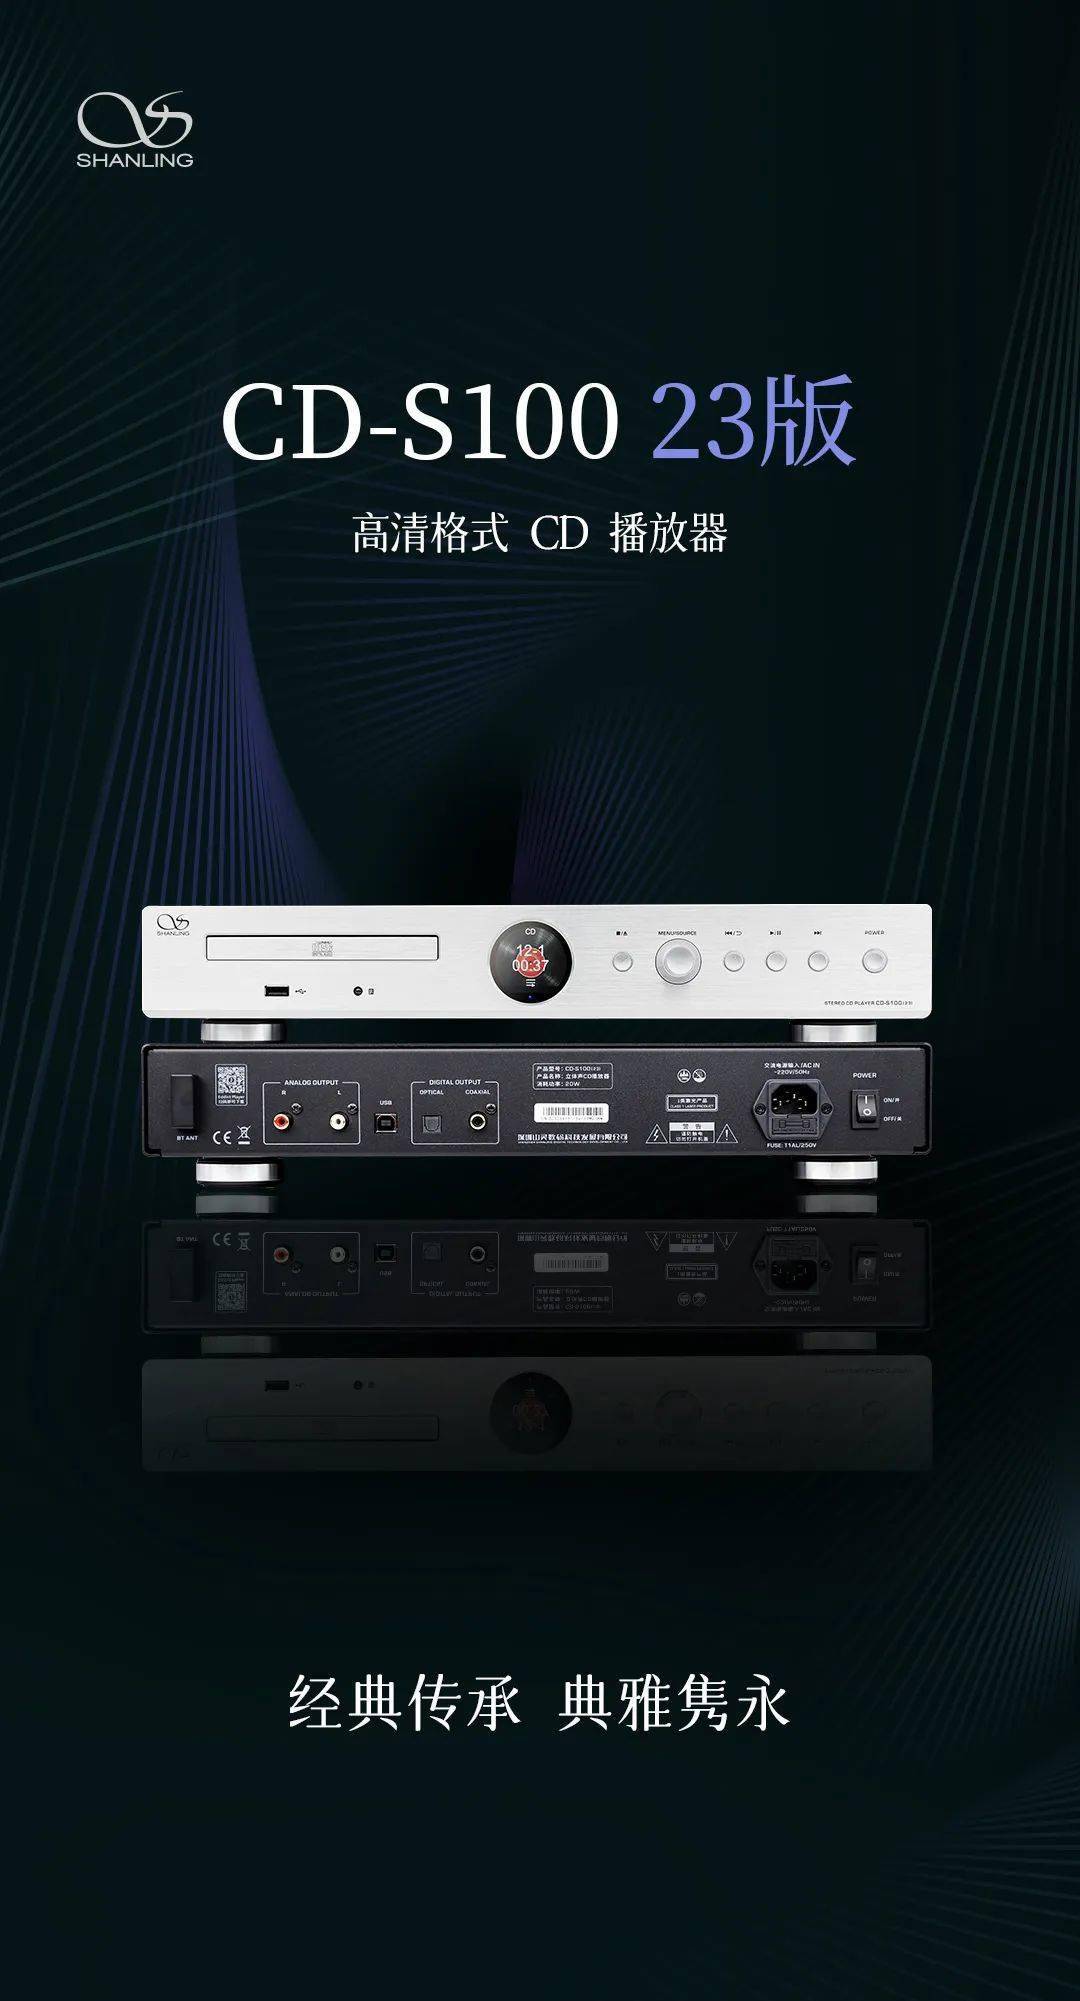 山靈 CD-100 23 版發布    預計將于 2023 年 3 月上旬正式上市